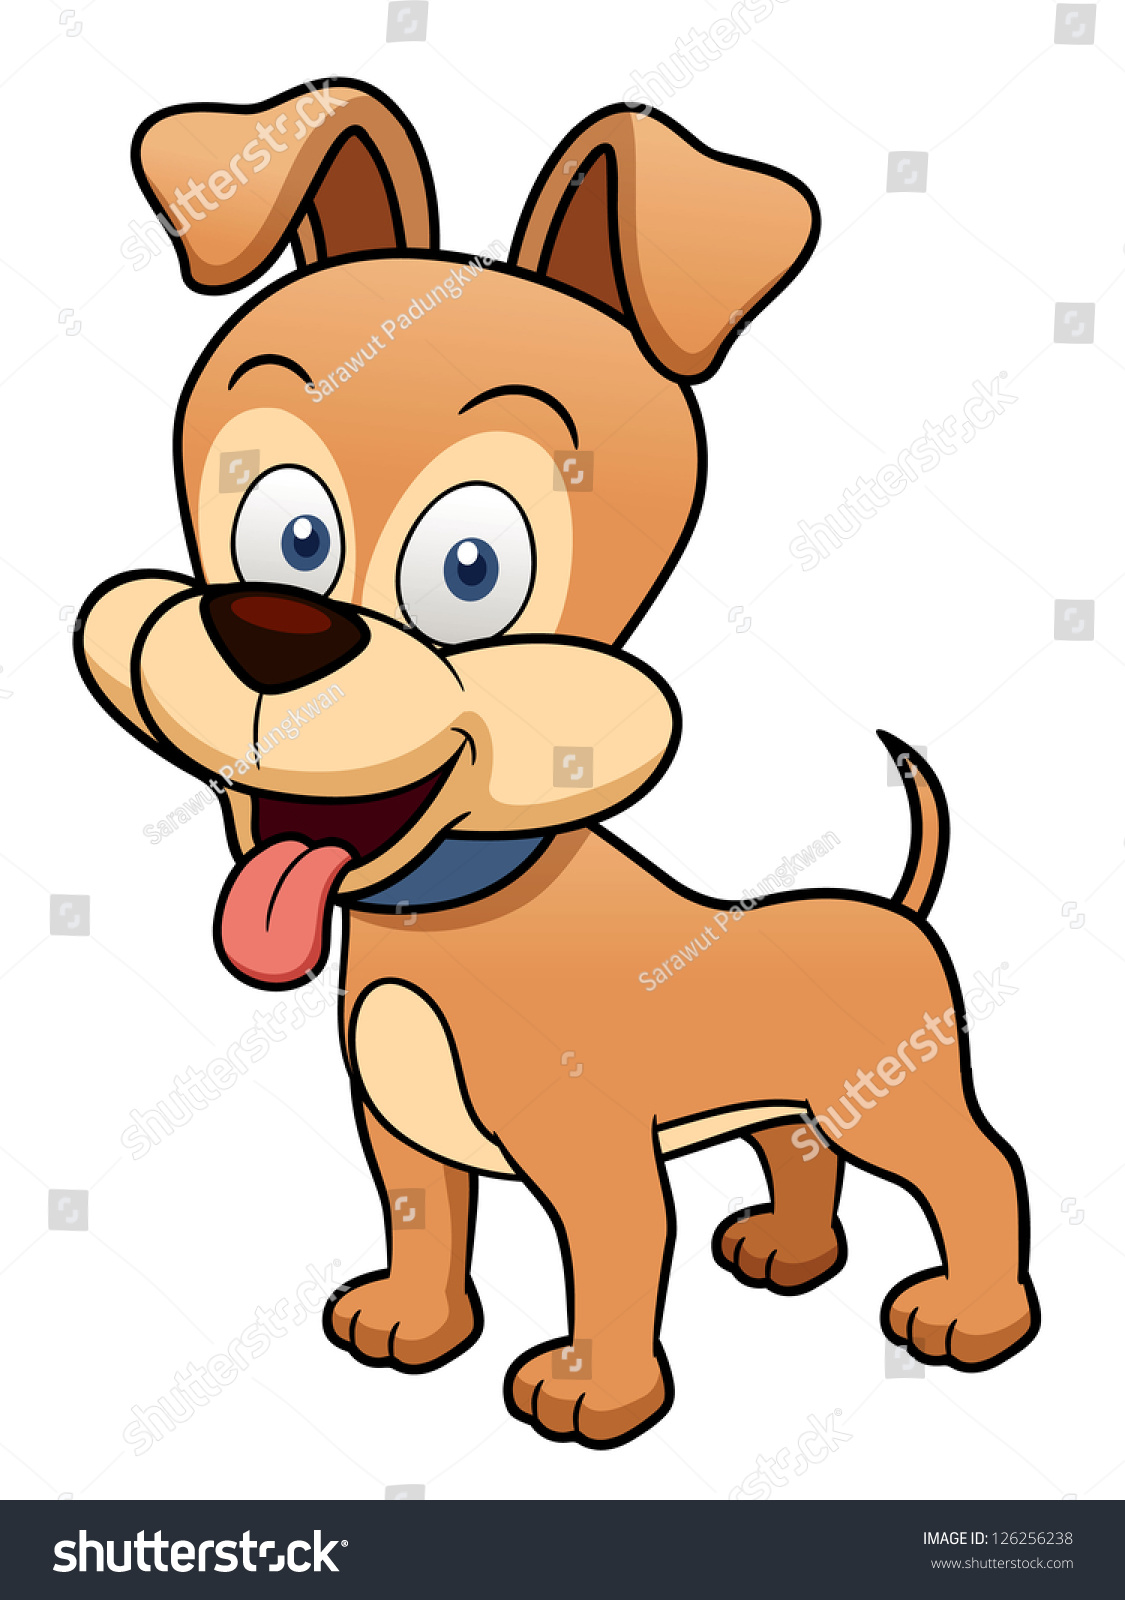 Illustration Of Cartoon Dog - 126256238 : Shutterstock